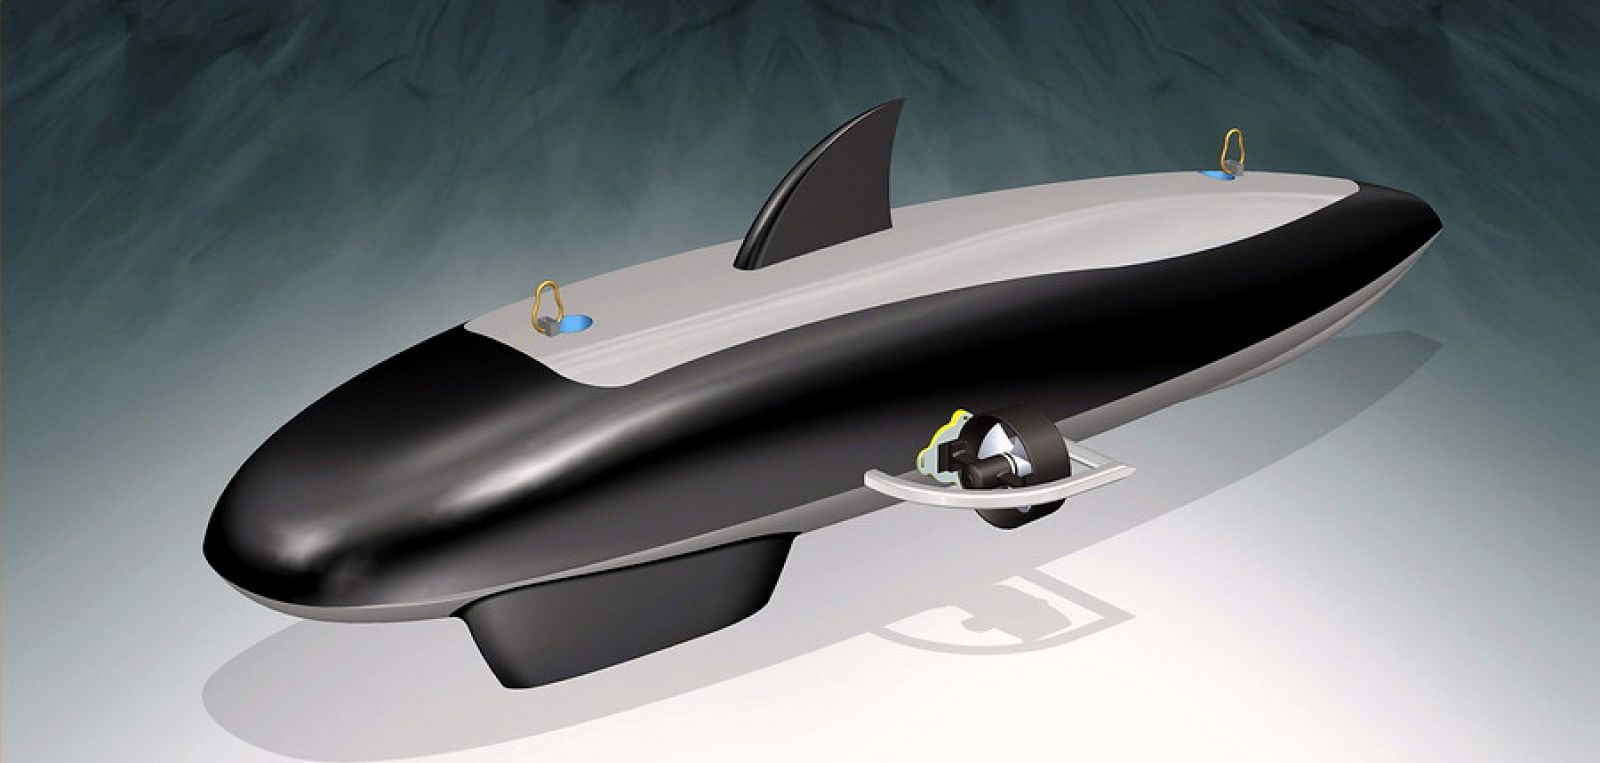 El ORCA 300, un vehículo submarino autónomo fabricado en España